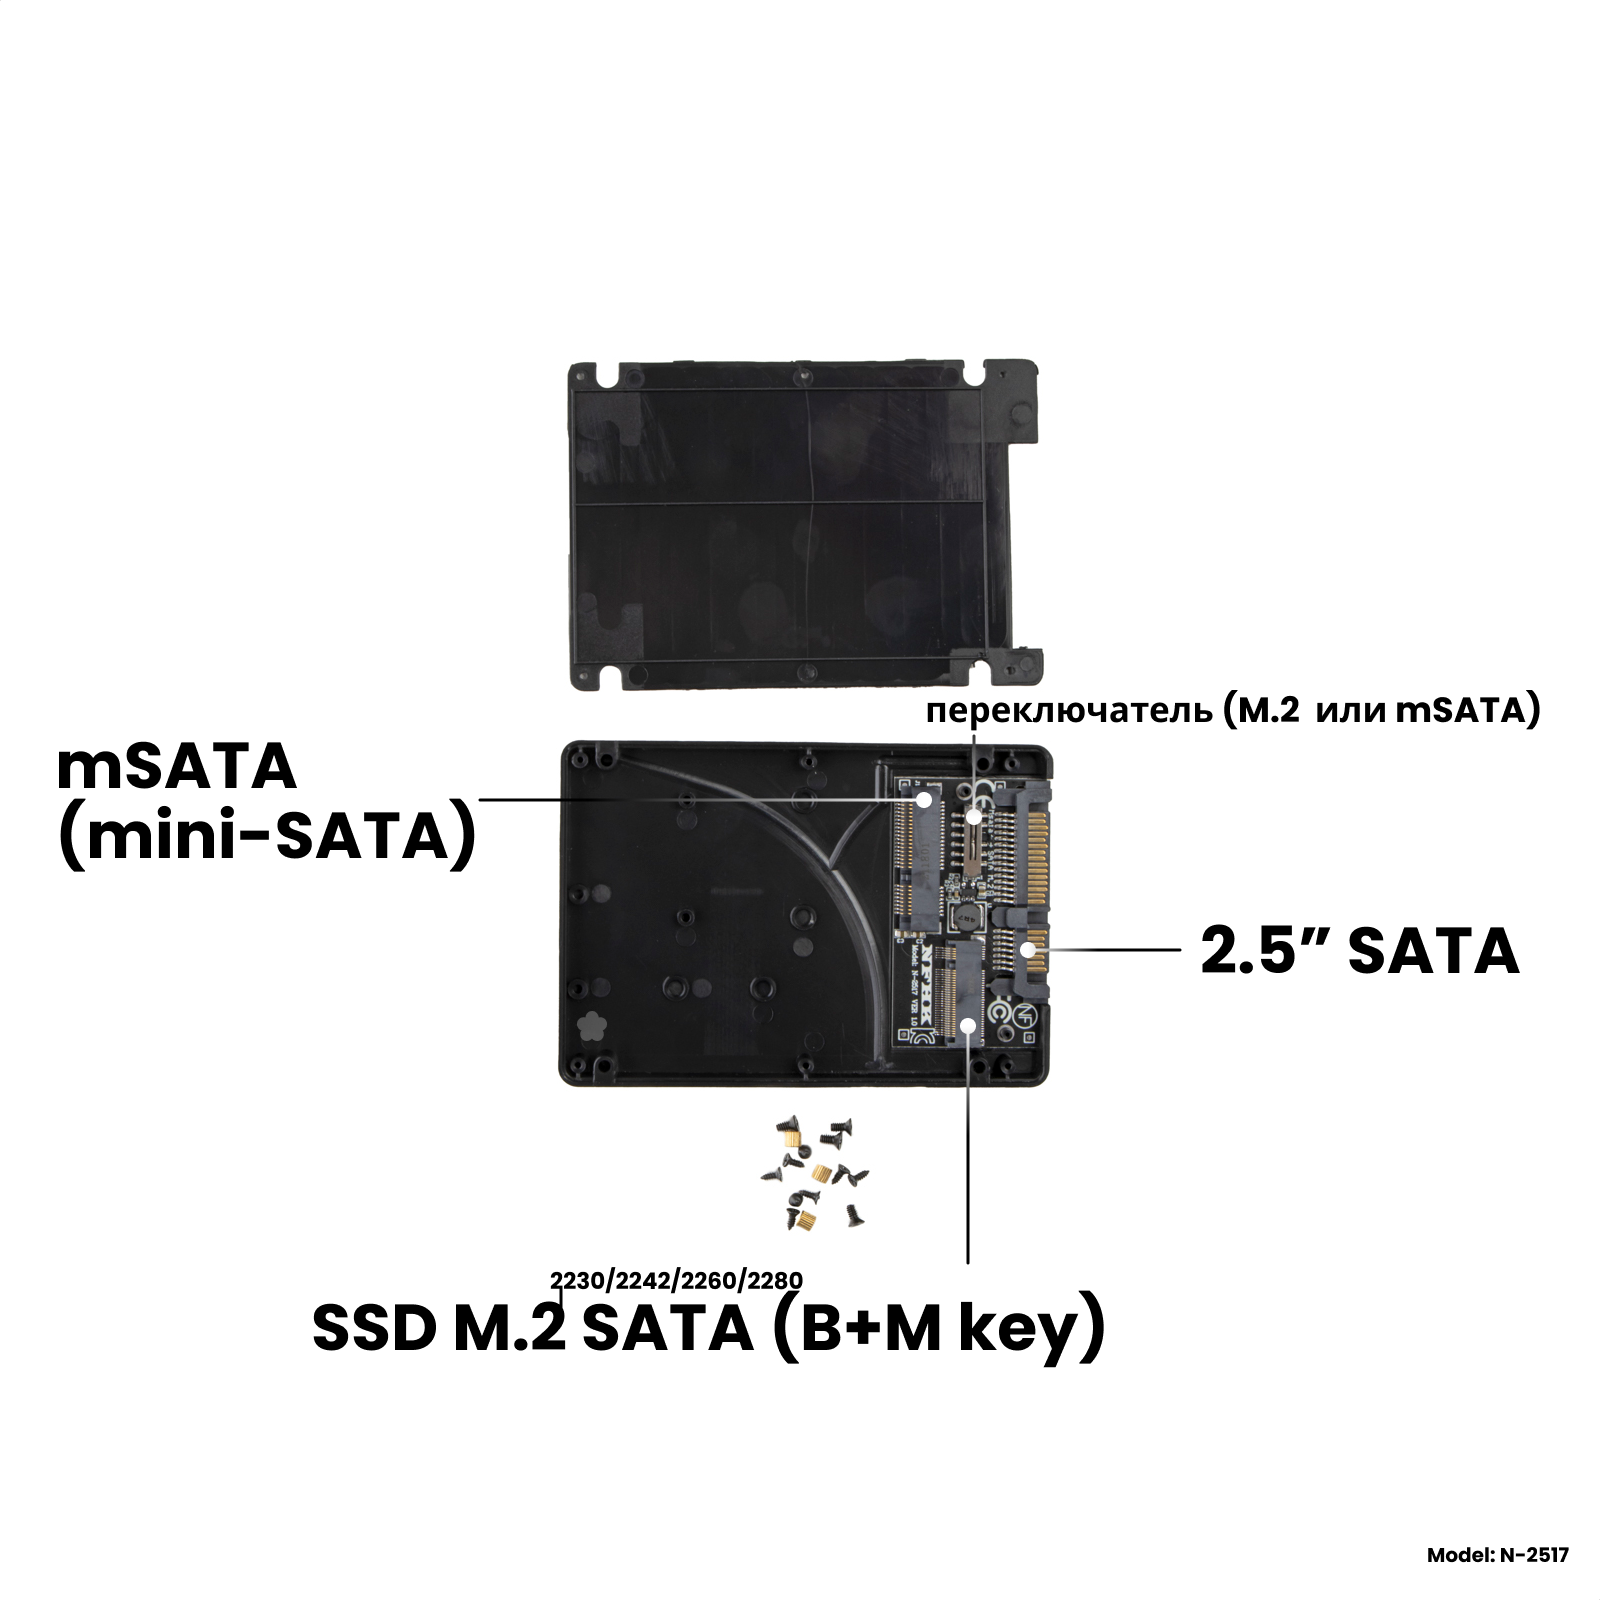 Адаптер-переходник для установки накопителя SSD M.2 SATA (B+M key) / mSATA (mini-SATA) в пластиковый корпус 2.5" SATA / NFHK N-2517